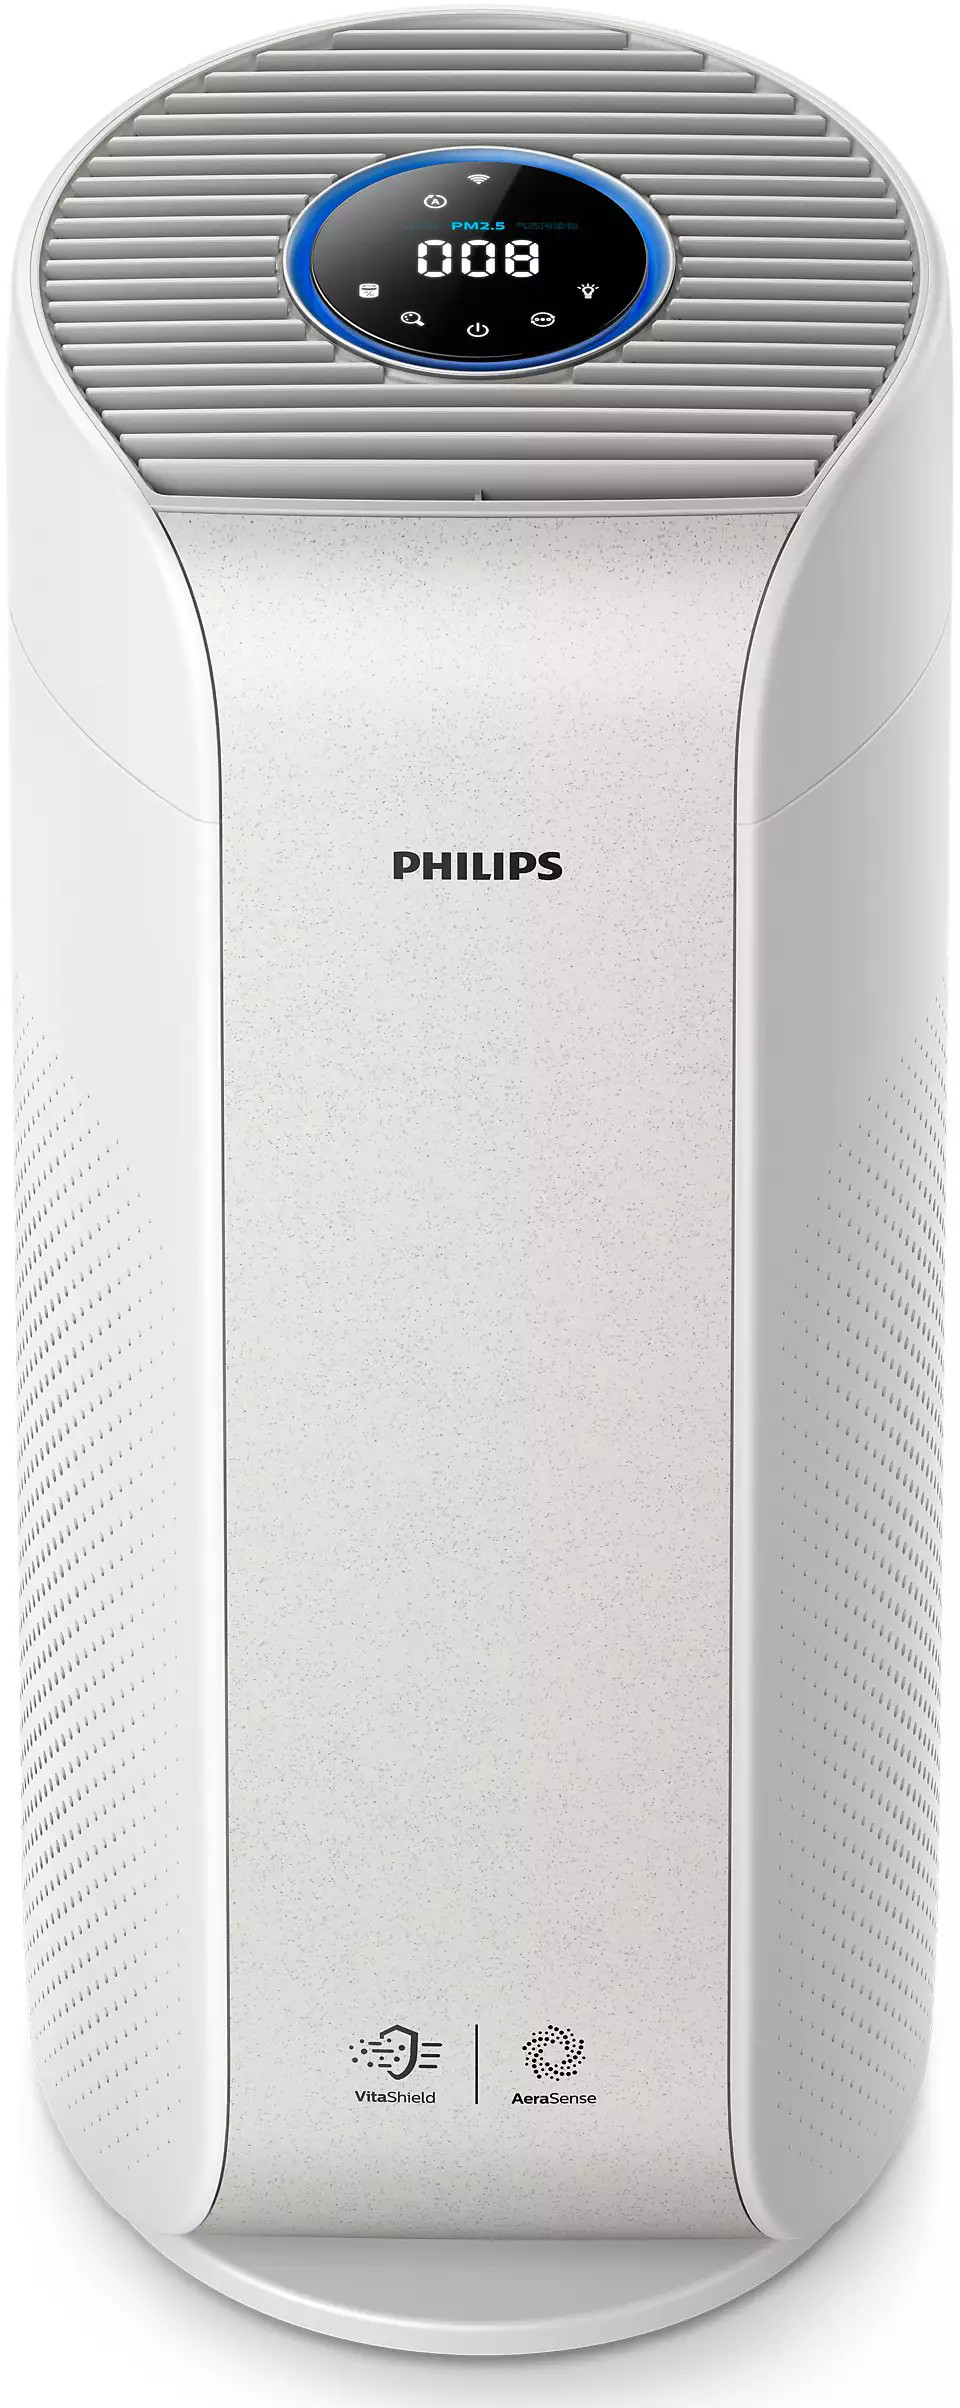 Купити очищувач повітря philips для дому Philips AC3055/51 в Києві